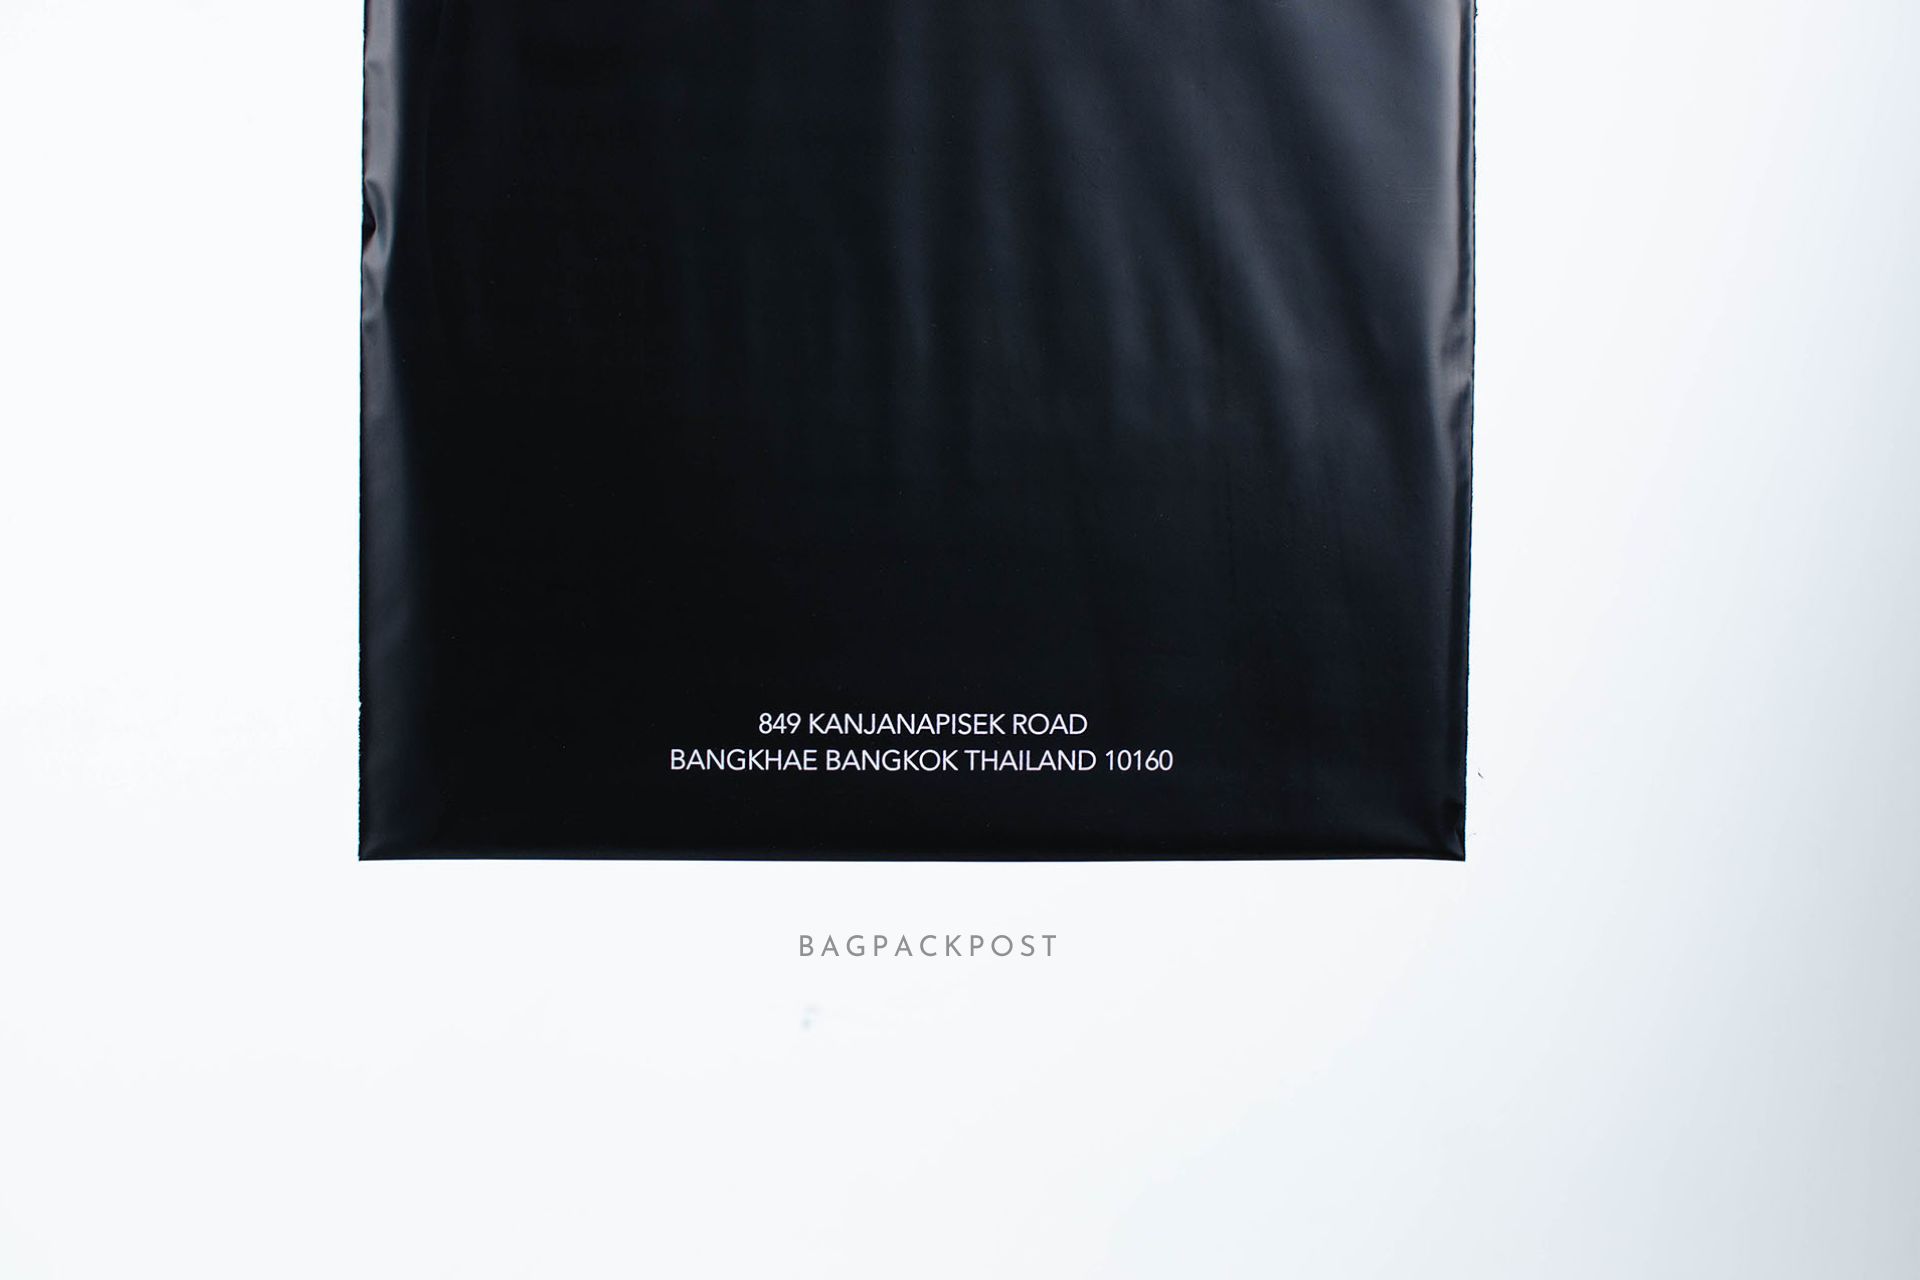 ผลิตถุงไปรษณีย์ ถุงพัสดุ ถุงพัสดุพิมพ์แบรนด์ ซองไปรษณีย์พิมพ์ลาย Vanillin Studio ซองไปรษณีย์สีดำ ถุงไปรษณีย์พิมพ์ลาย 2 BagPackPost